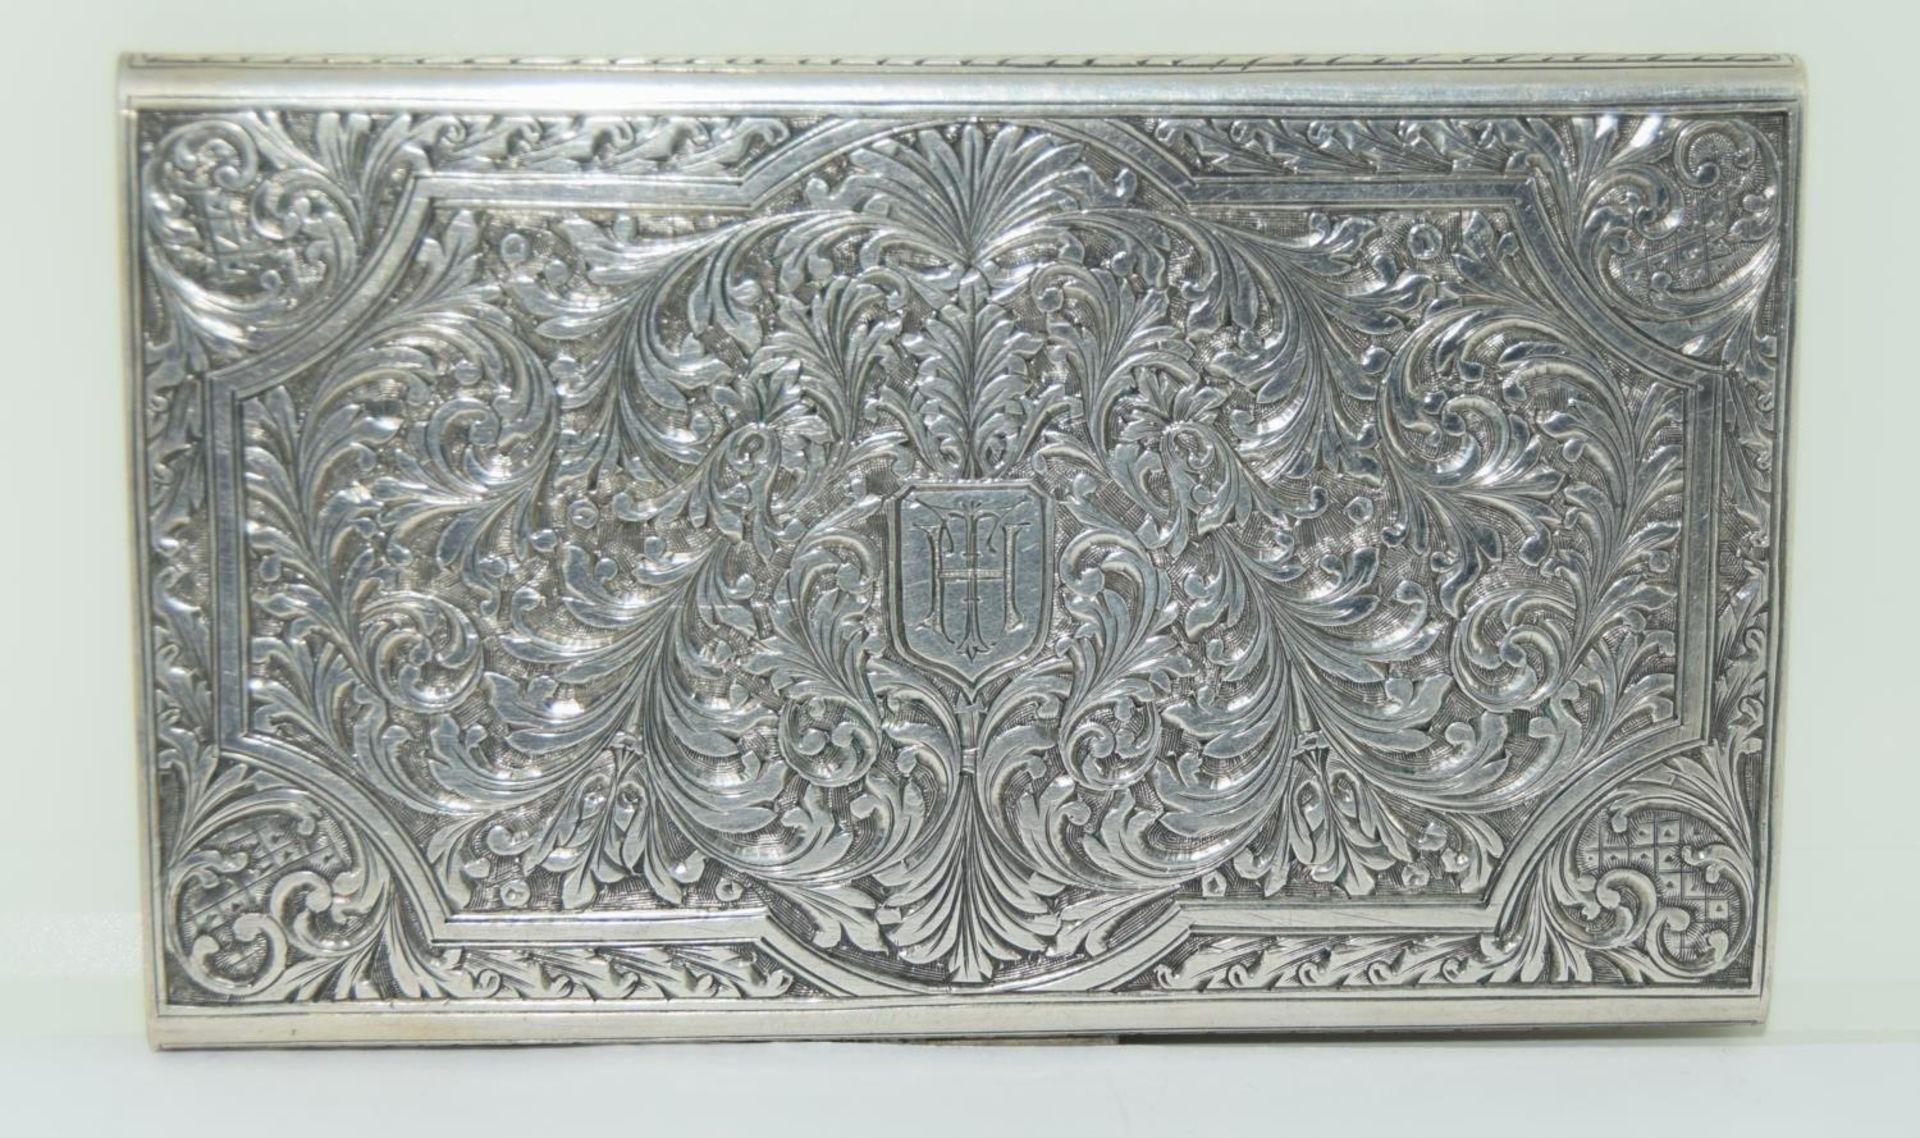 Silver cigarette case - 195g. Excellent condition.